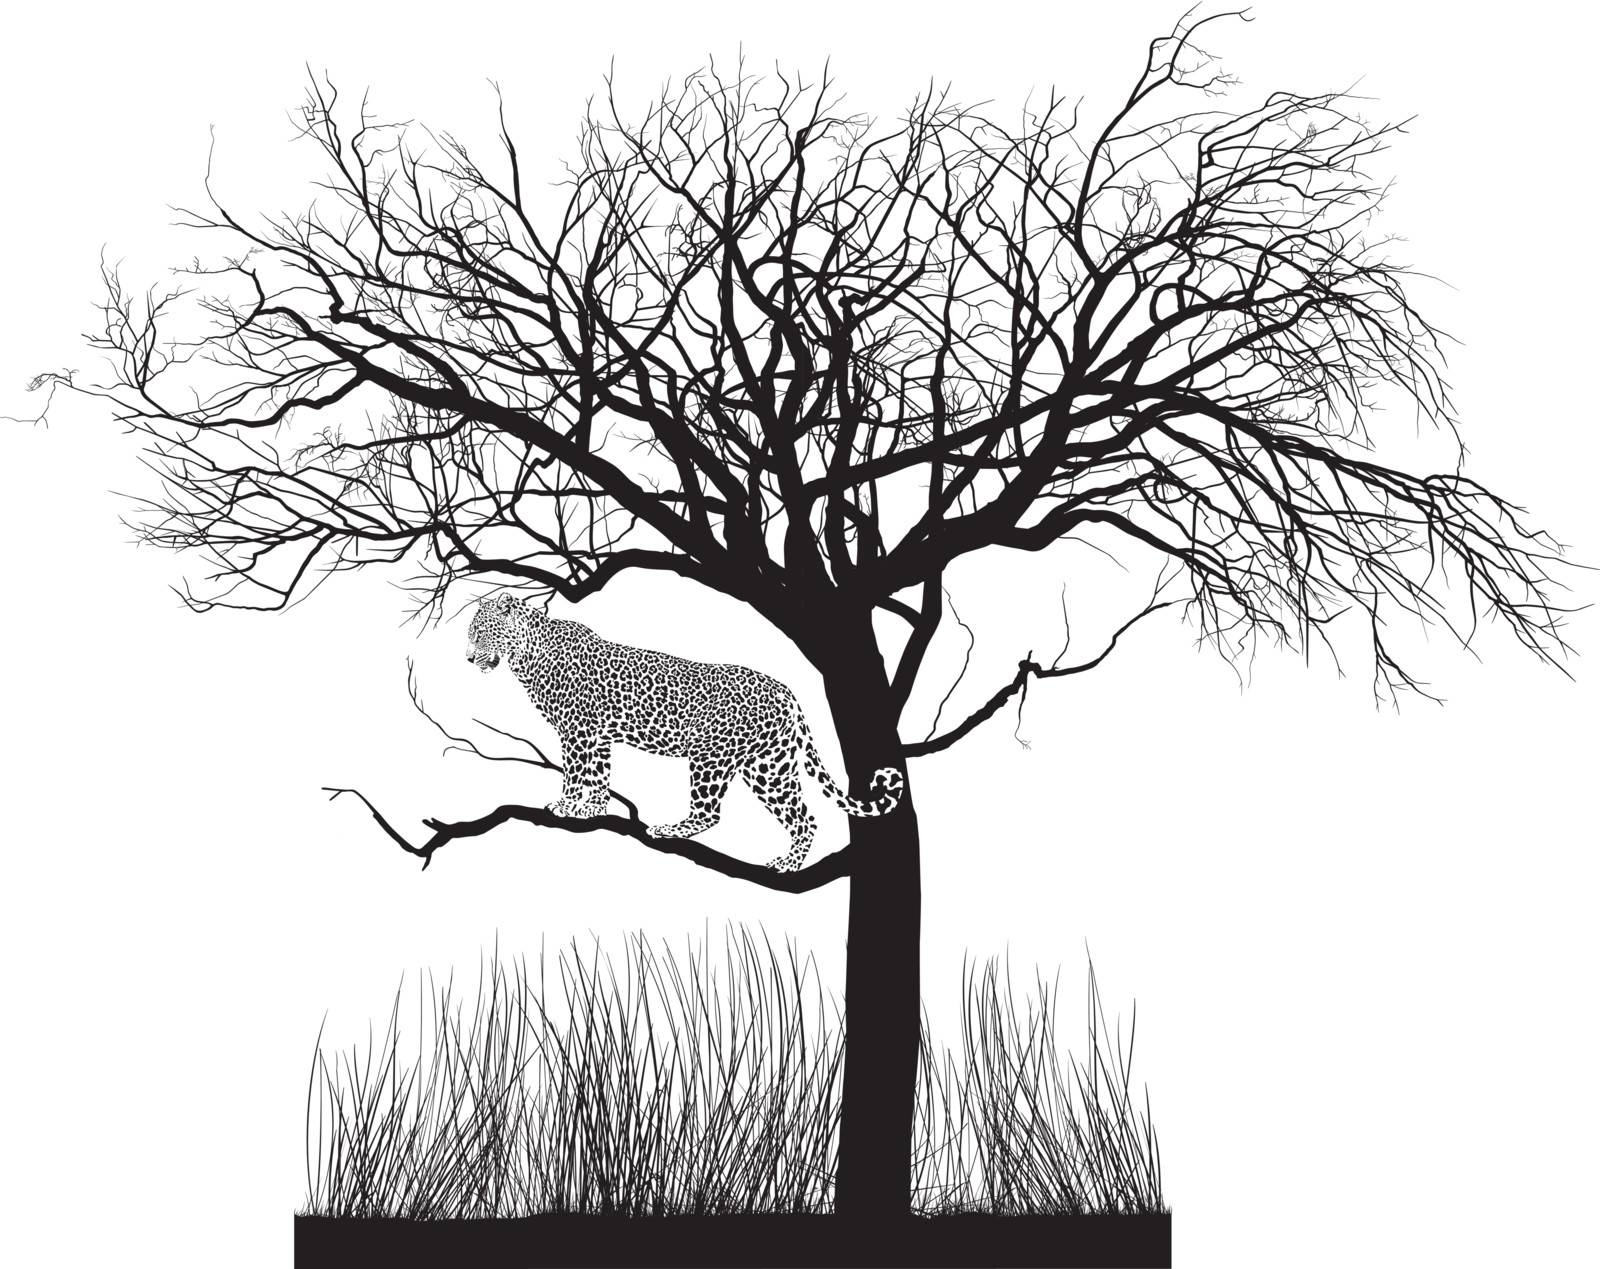 Jaguar in a tree by ard1